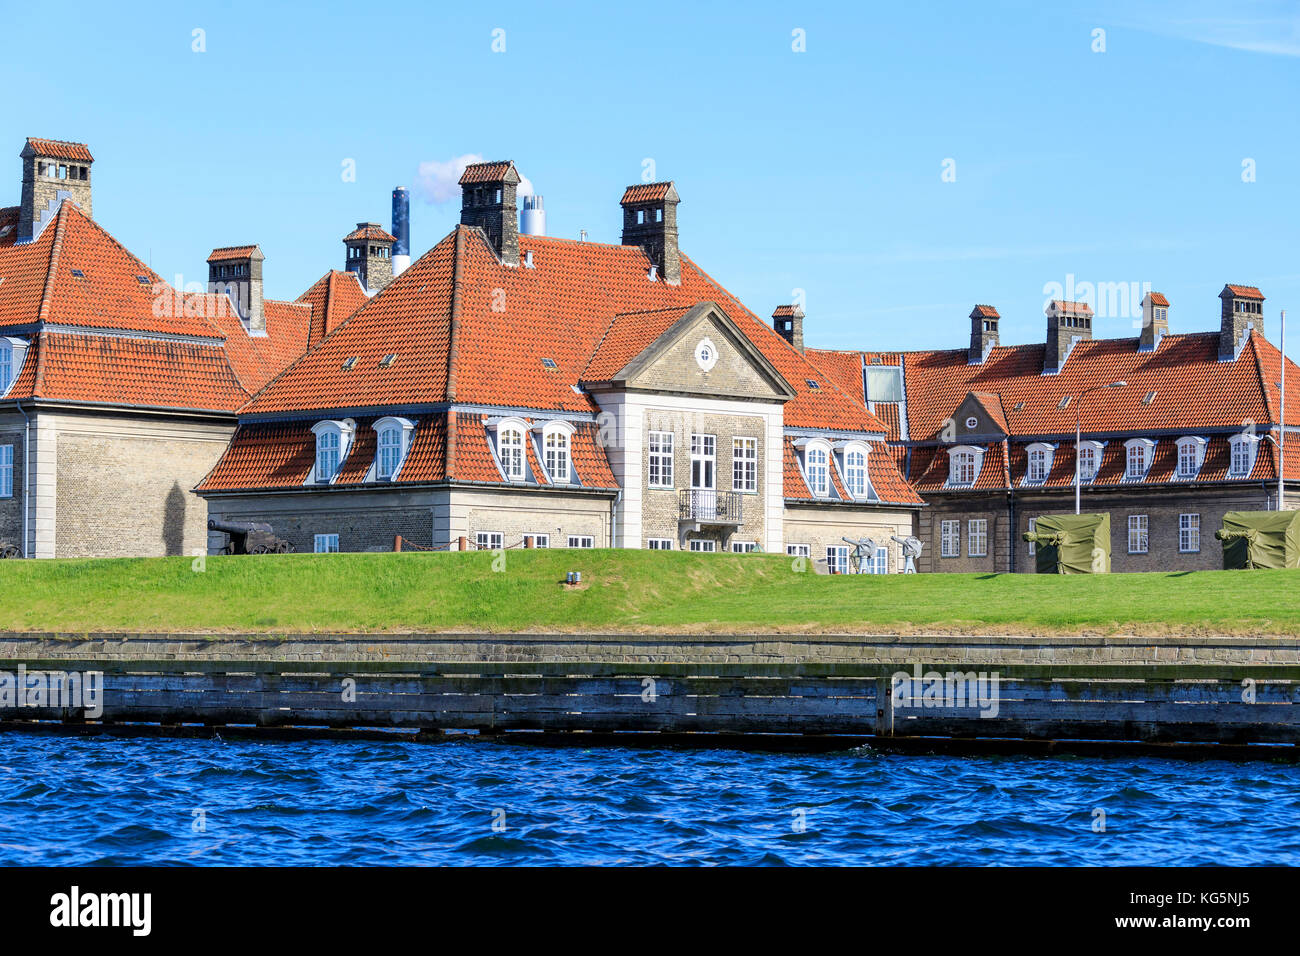 Maisons typiques du quartier résidentiel d'un voyage en bateau le long des canaux de Copenhague, Danemark Banque D'Images